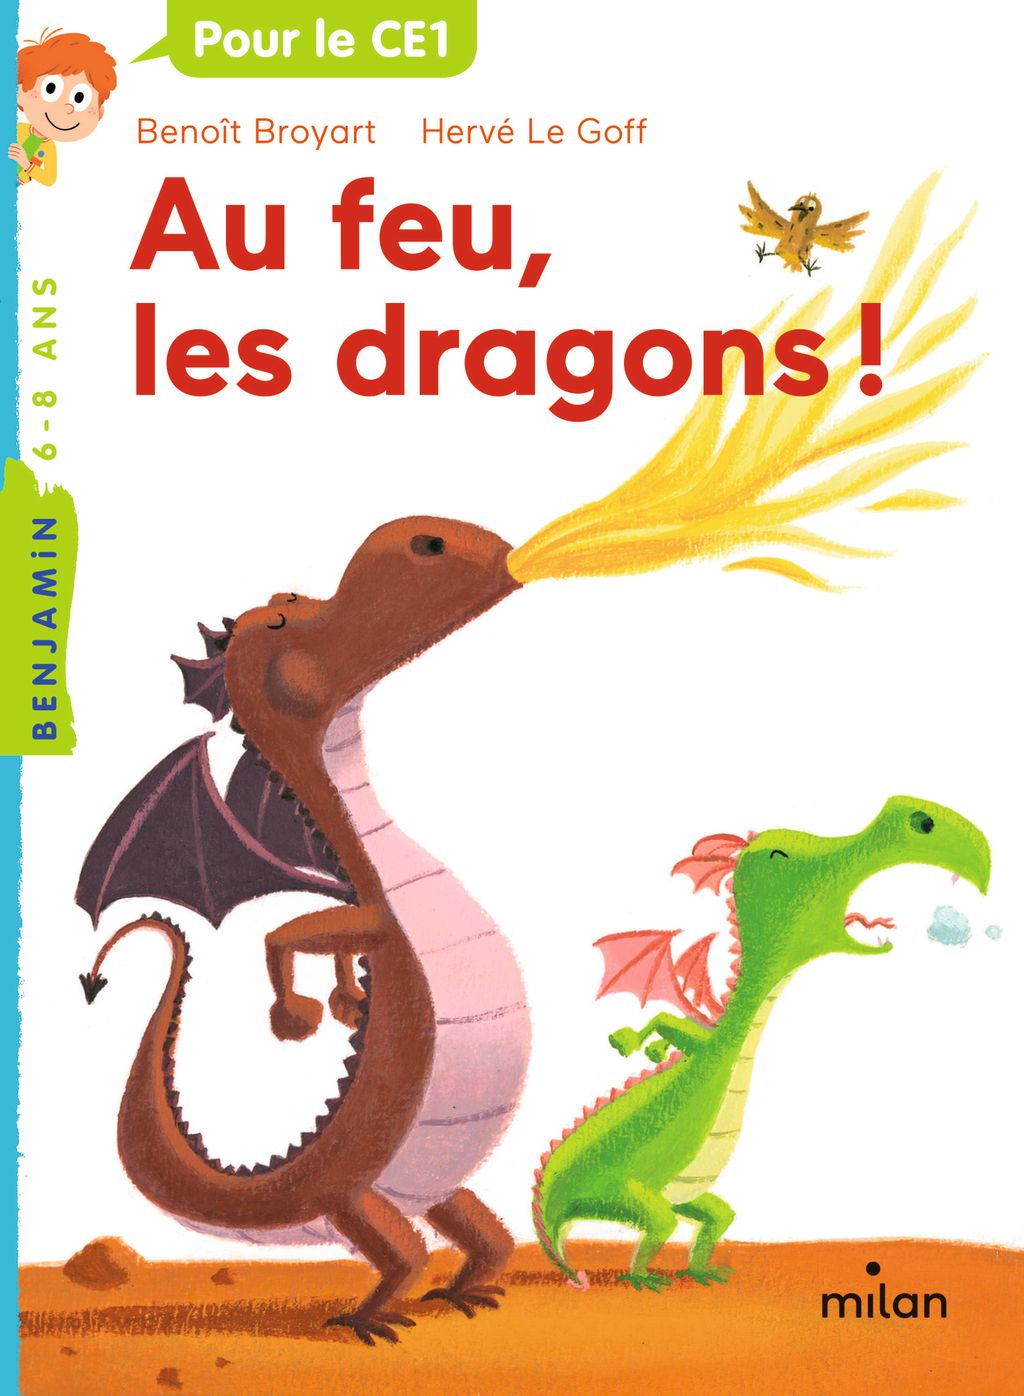 « Au feu les dragons » cover